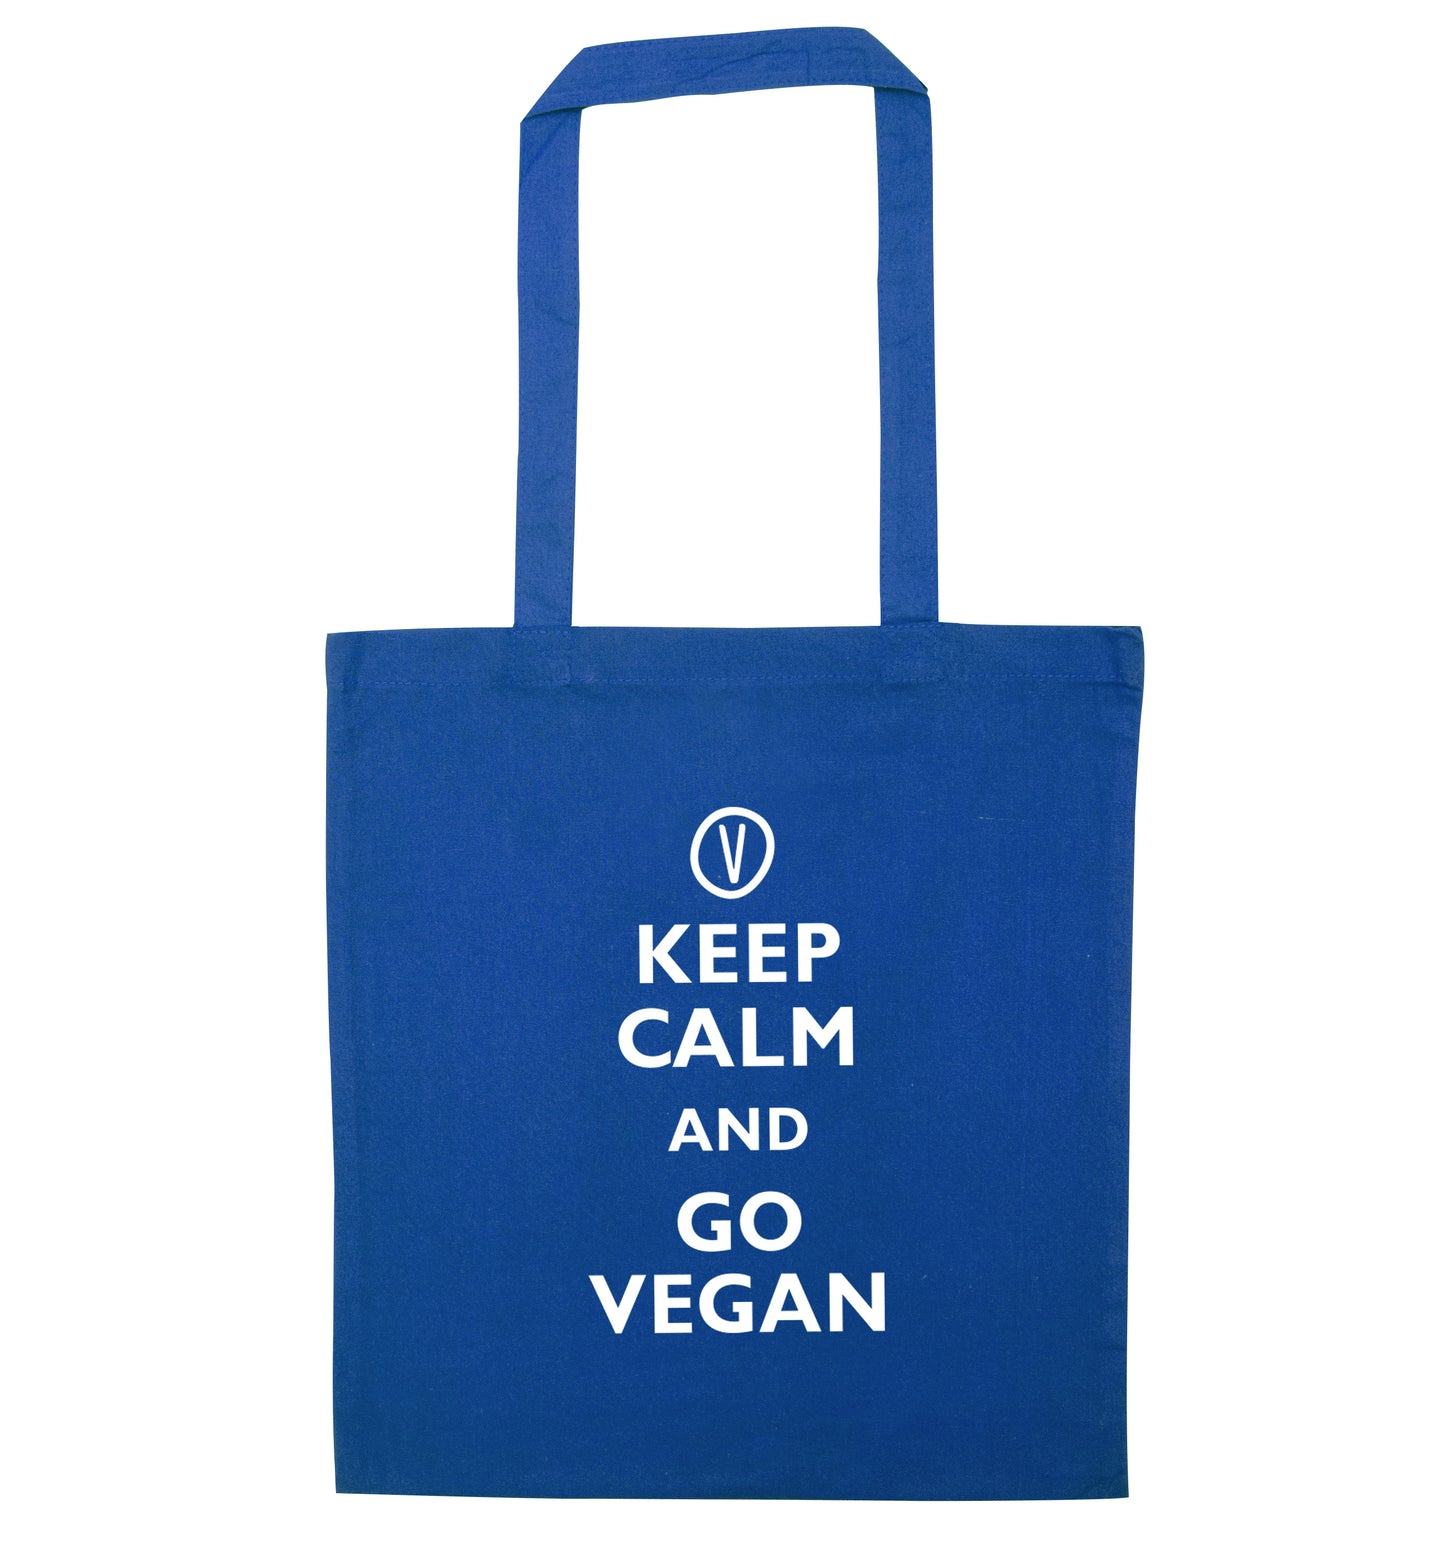 Keep calm and go vegan blue tote bag